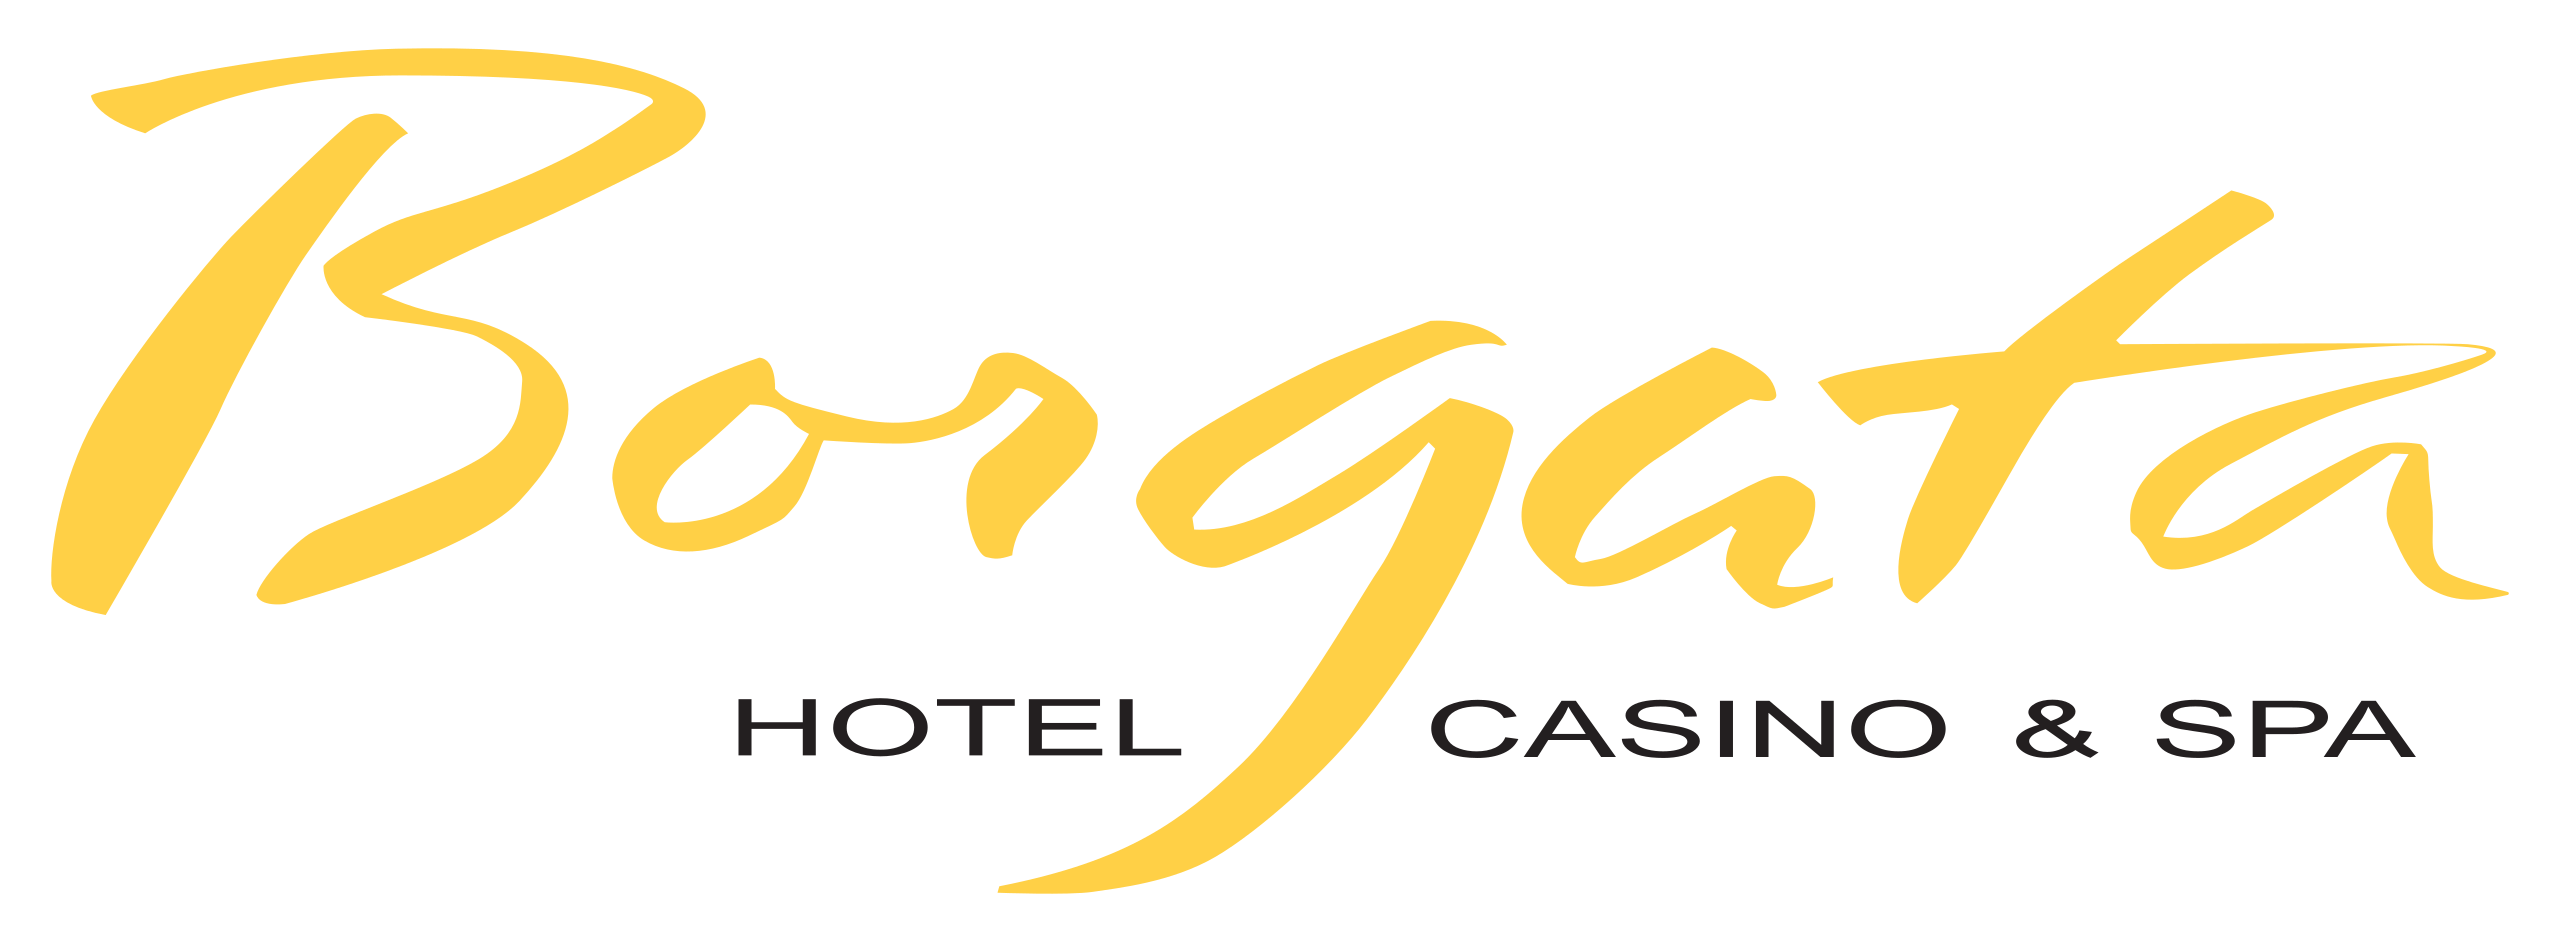 Borgata Hotel Casino Spa